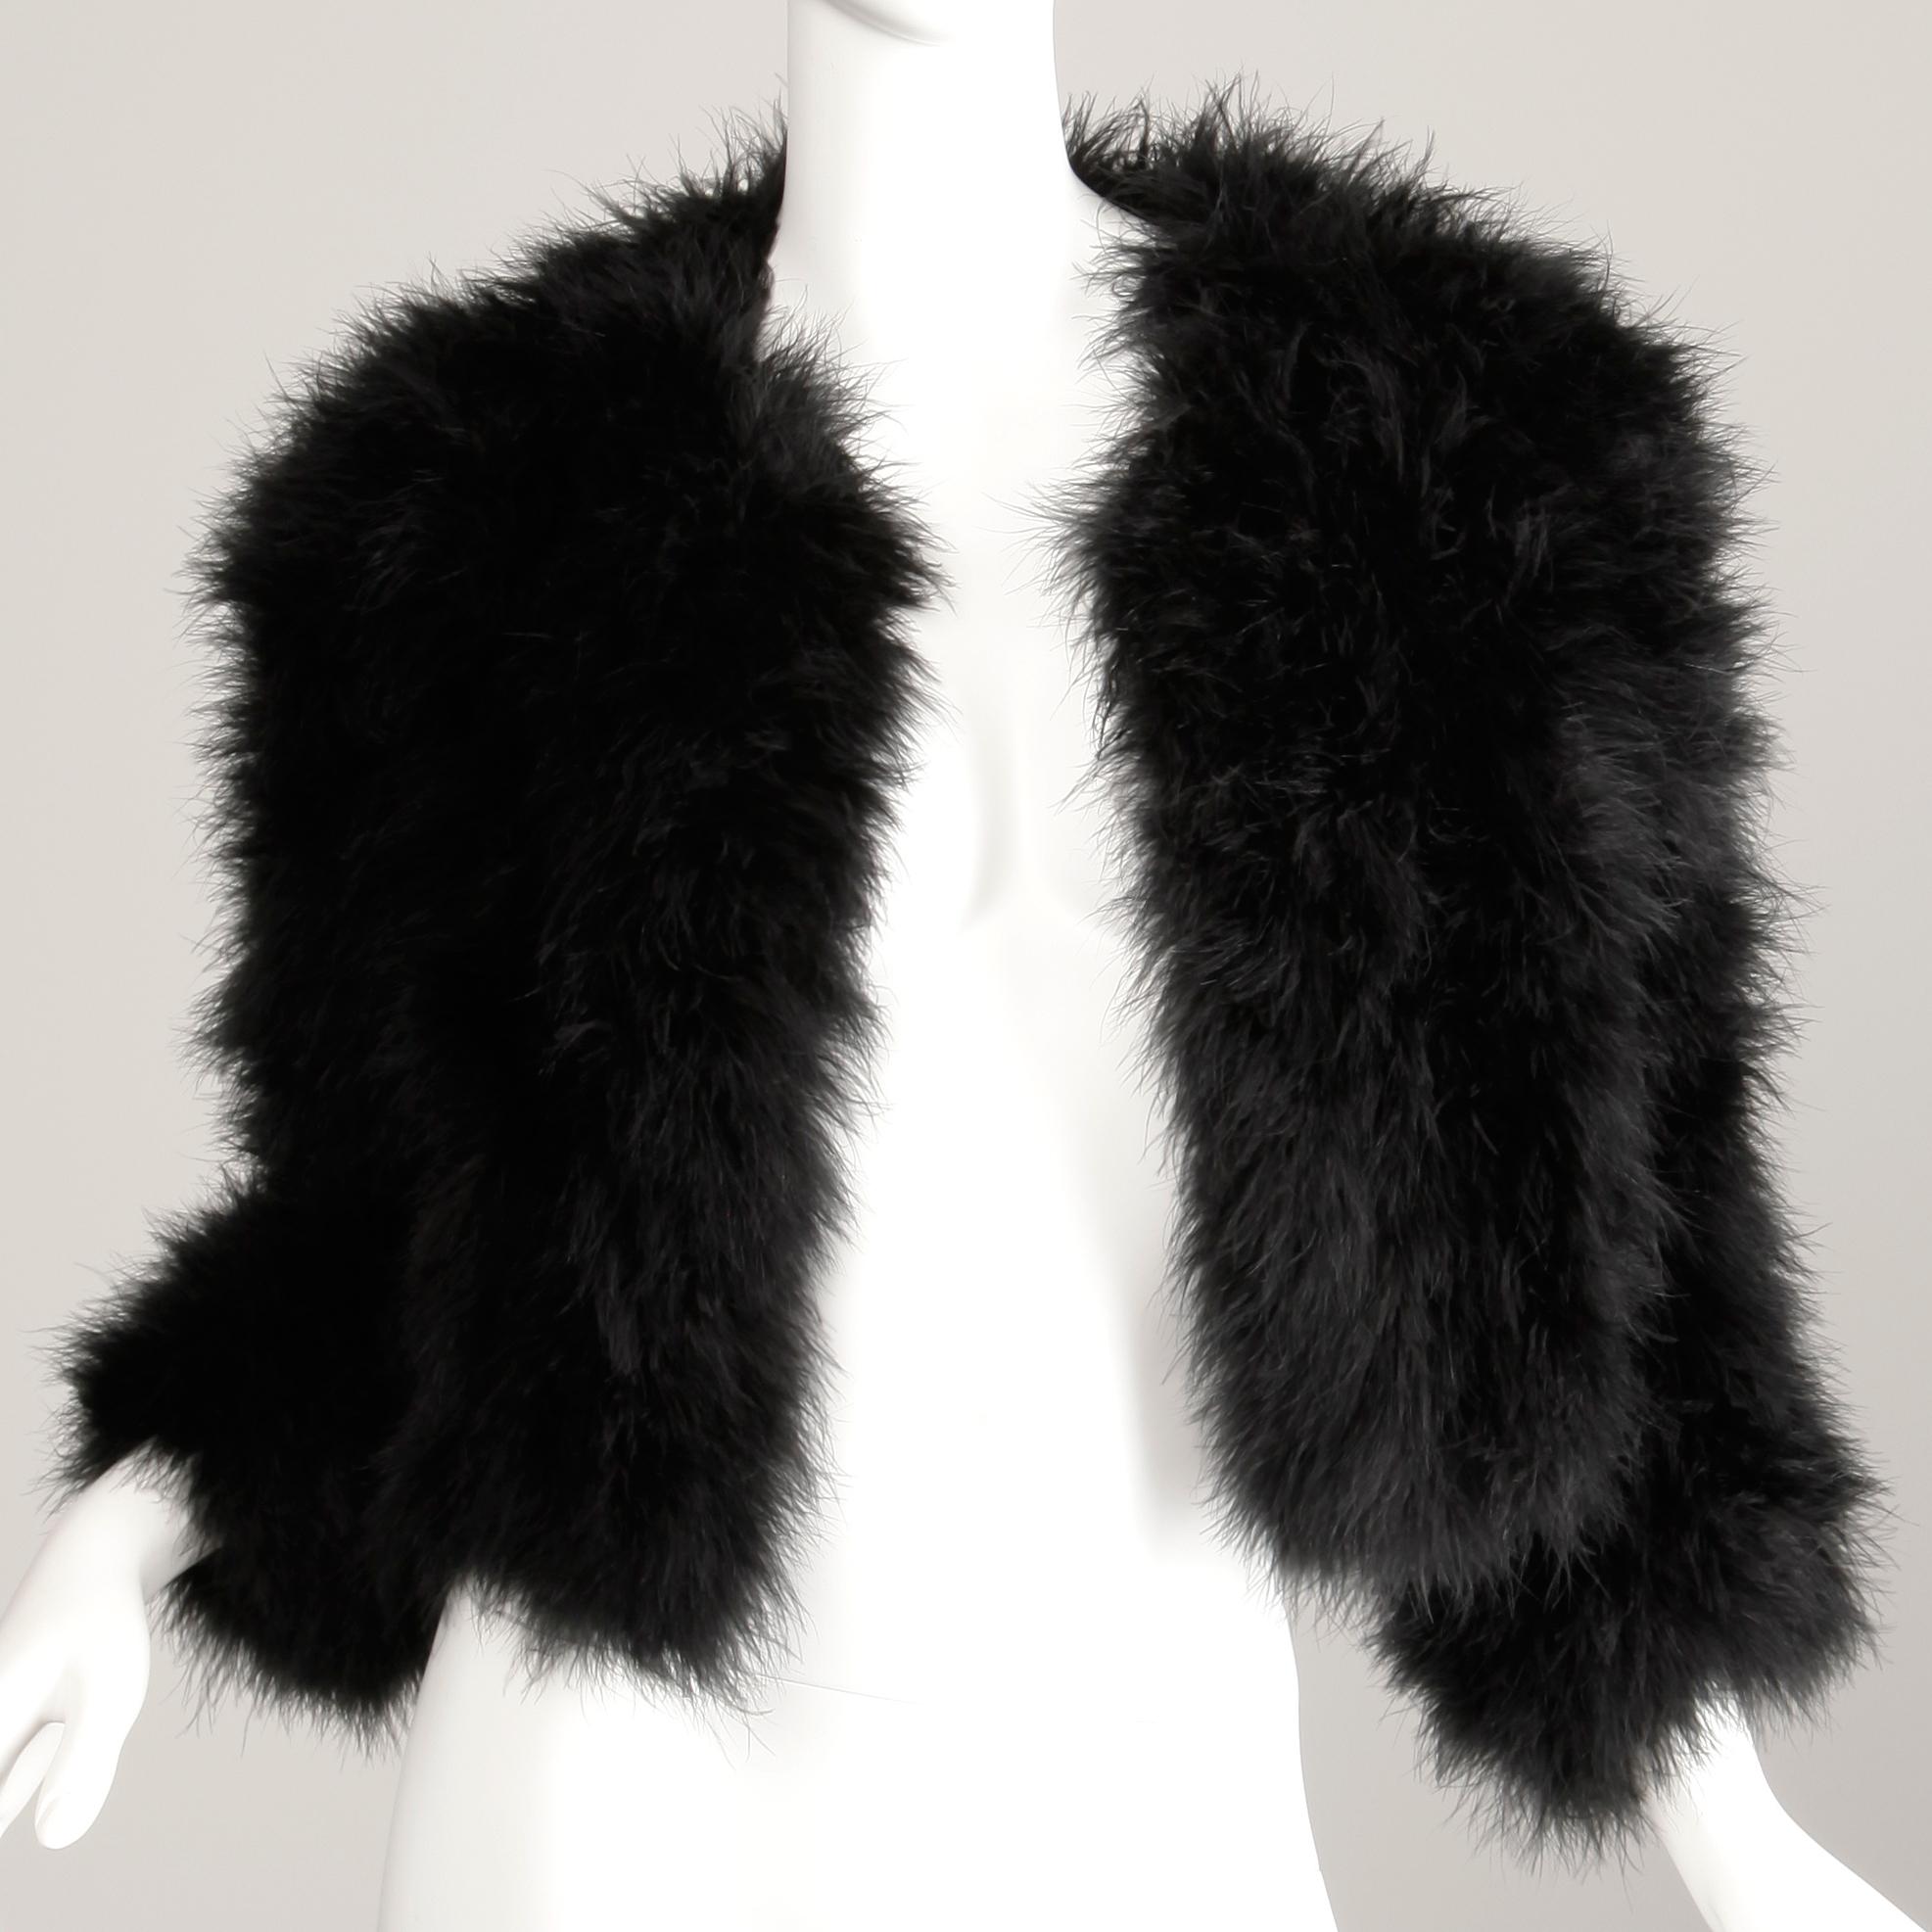 Magnifique veste en plumes de marabout noir vintage des années 1980, signée Adrienne Landau. Non doublé avec fermeture à crochet sur le devant. 100% plumes de marabout. La taille indiquée est 